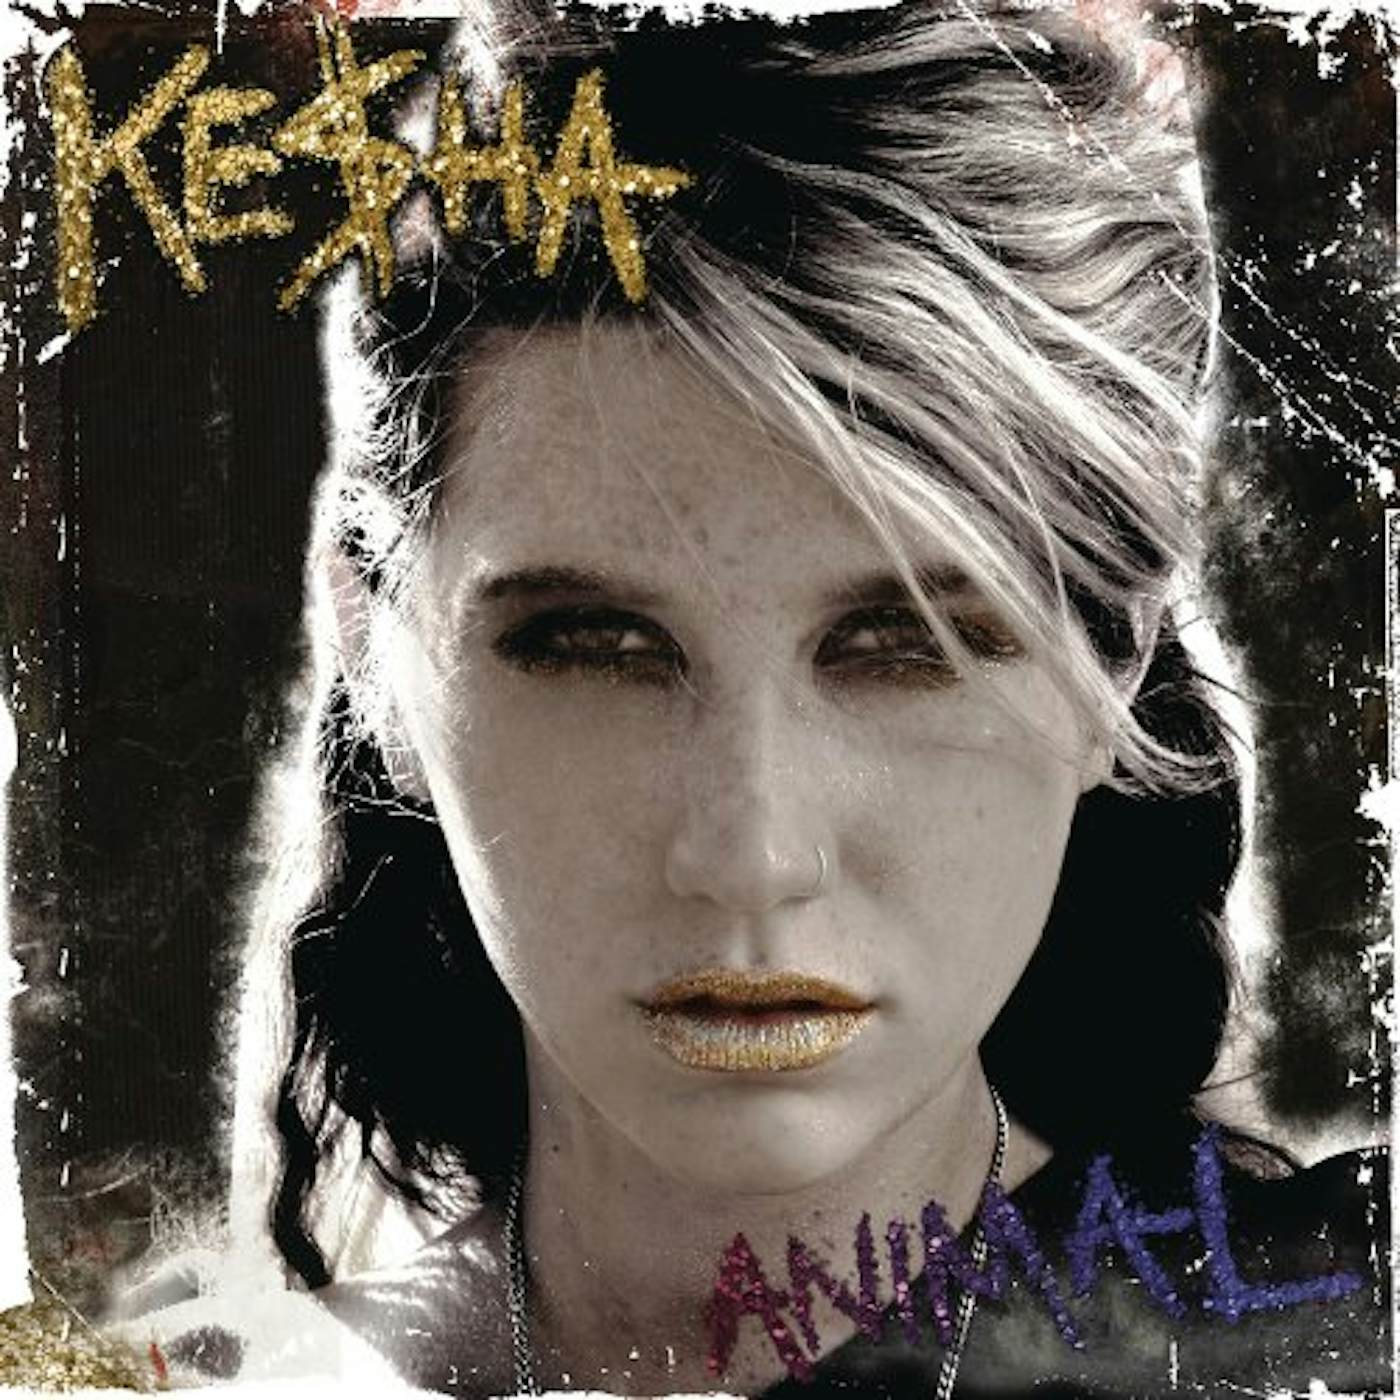 Kesha Animal Vinyl Record